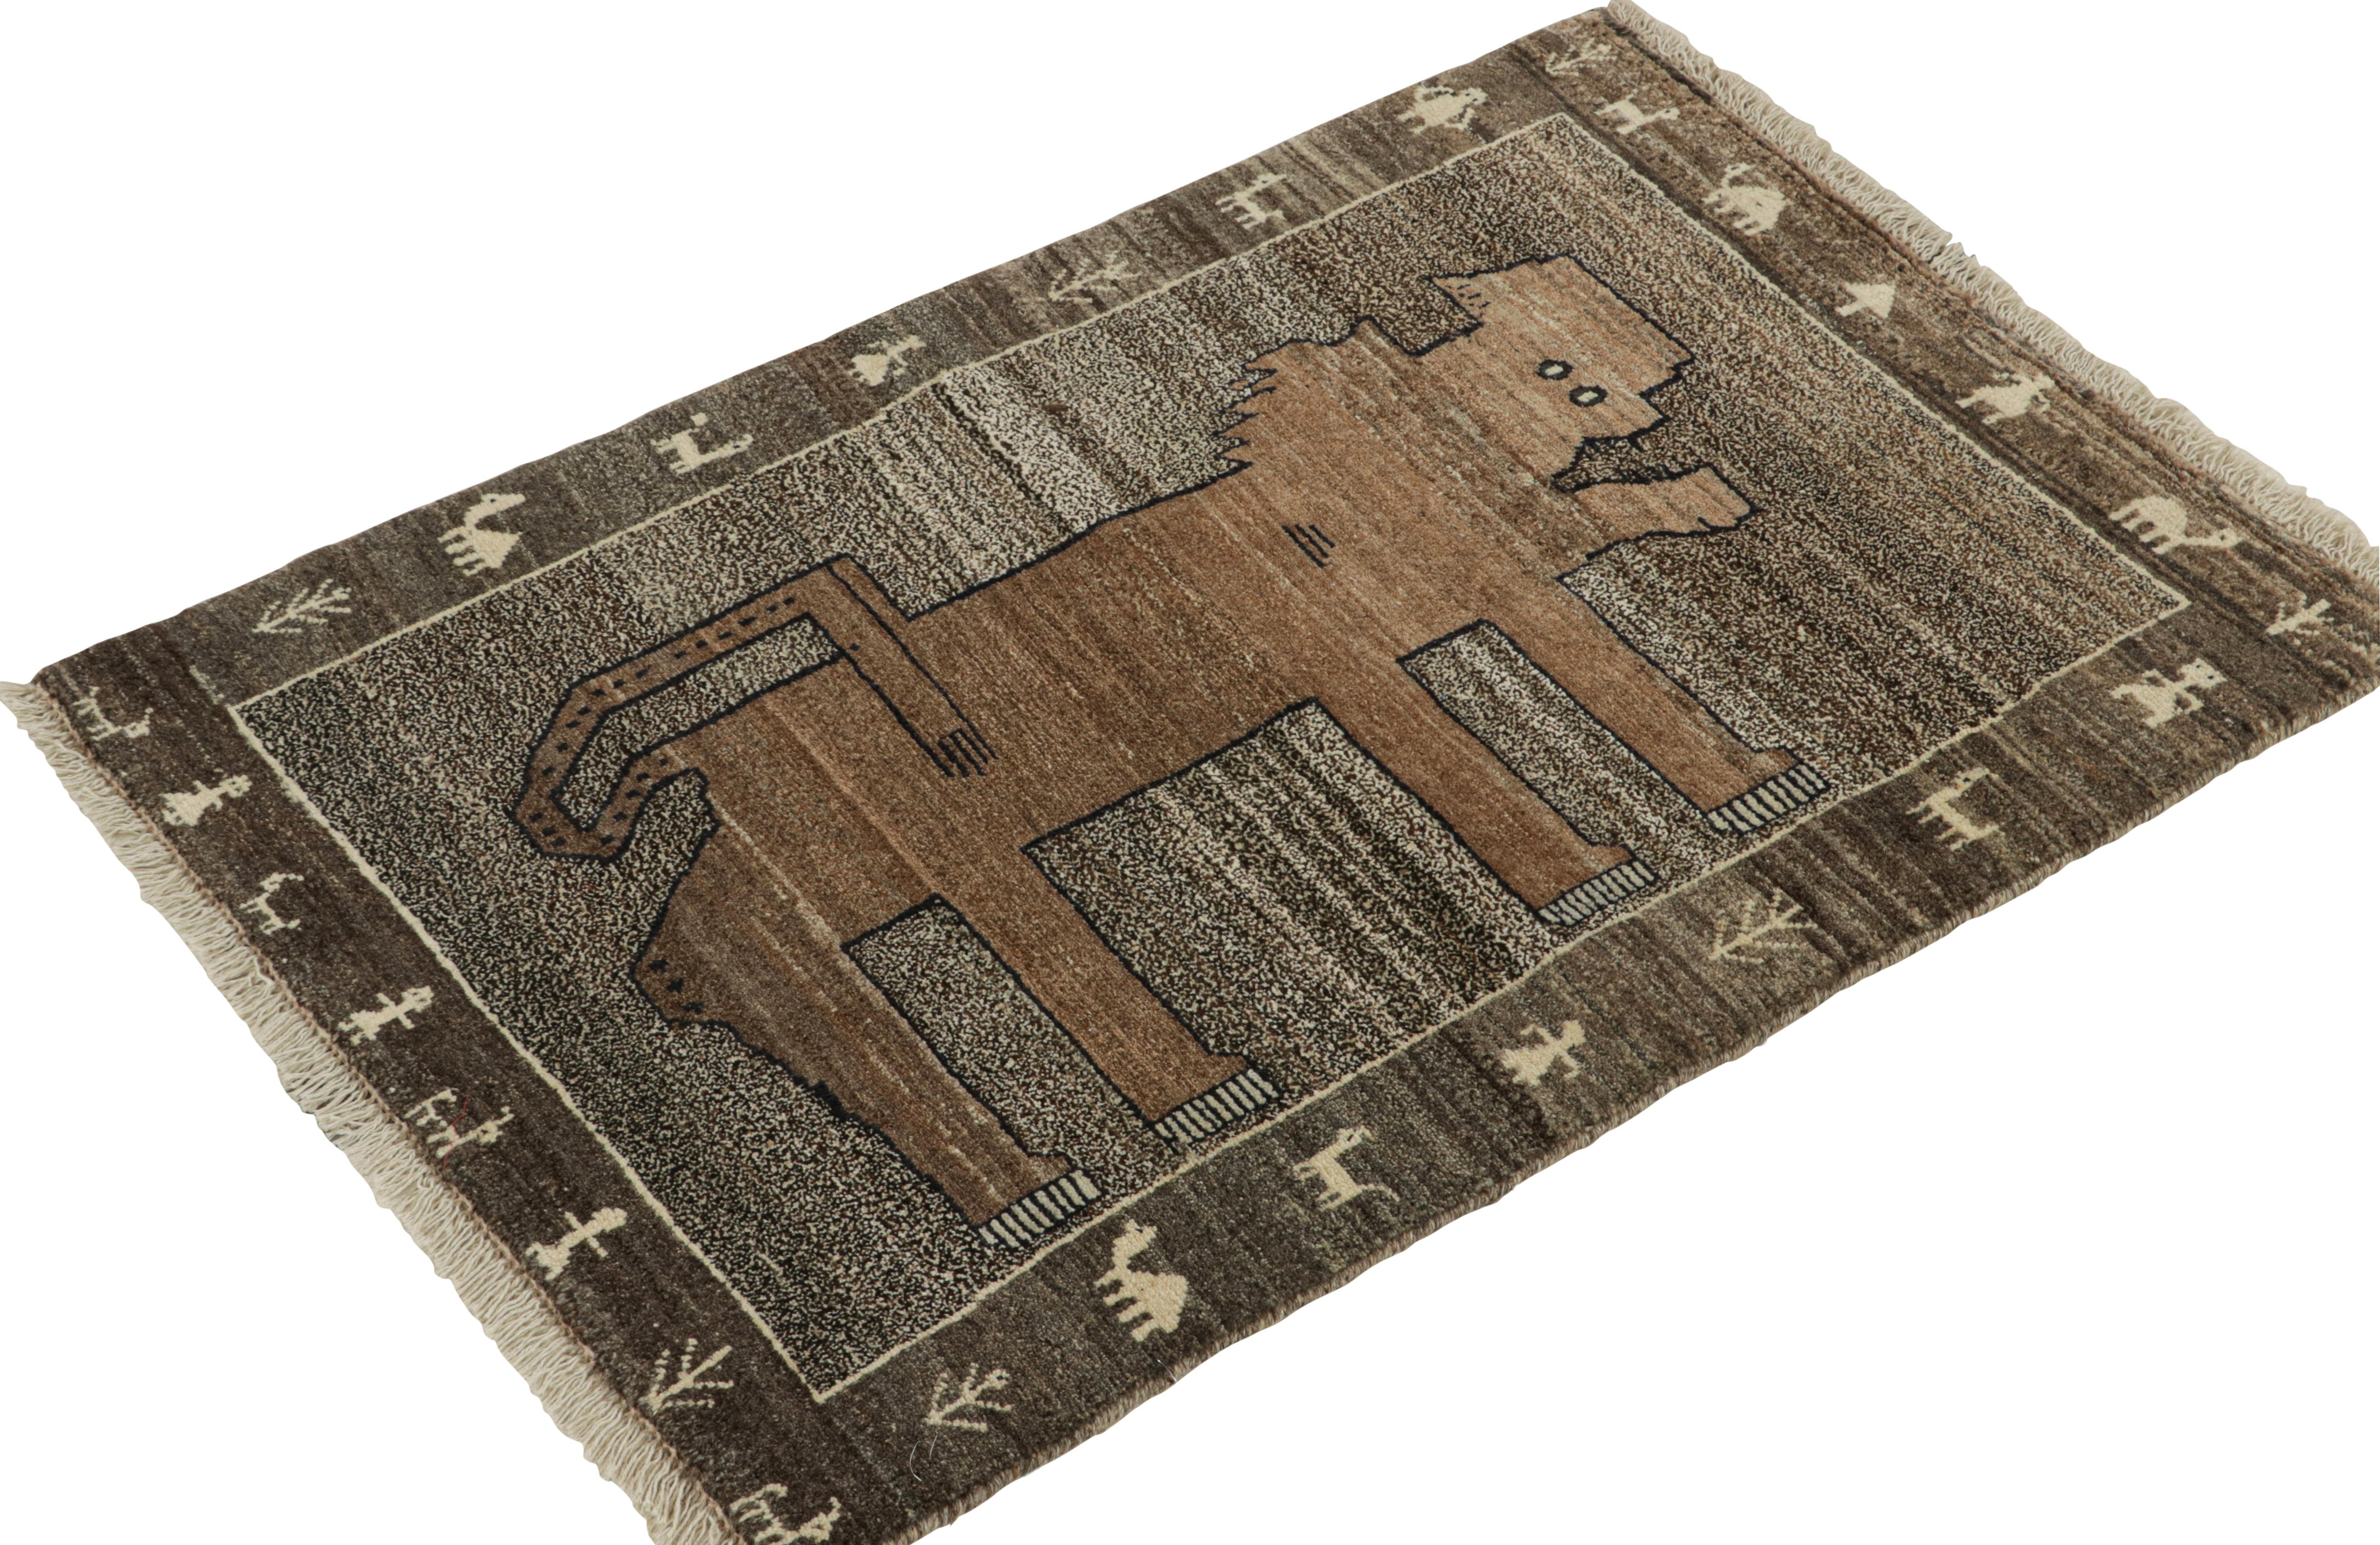 Ce tapis persan vintage 3x5 Gabbeh fait partie des dernières entrées dans les curations tribales rares de Rug & Kilim. Noué à la main en laine vers 1950-1960.

Sur le design :

Cette origine tribale est l'un des styles shabby-chic les plus